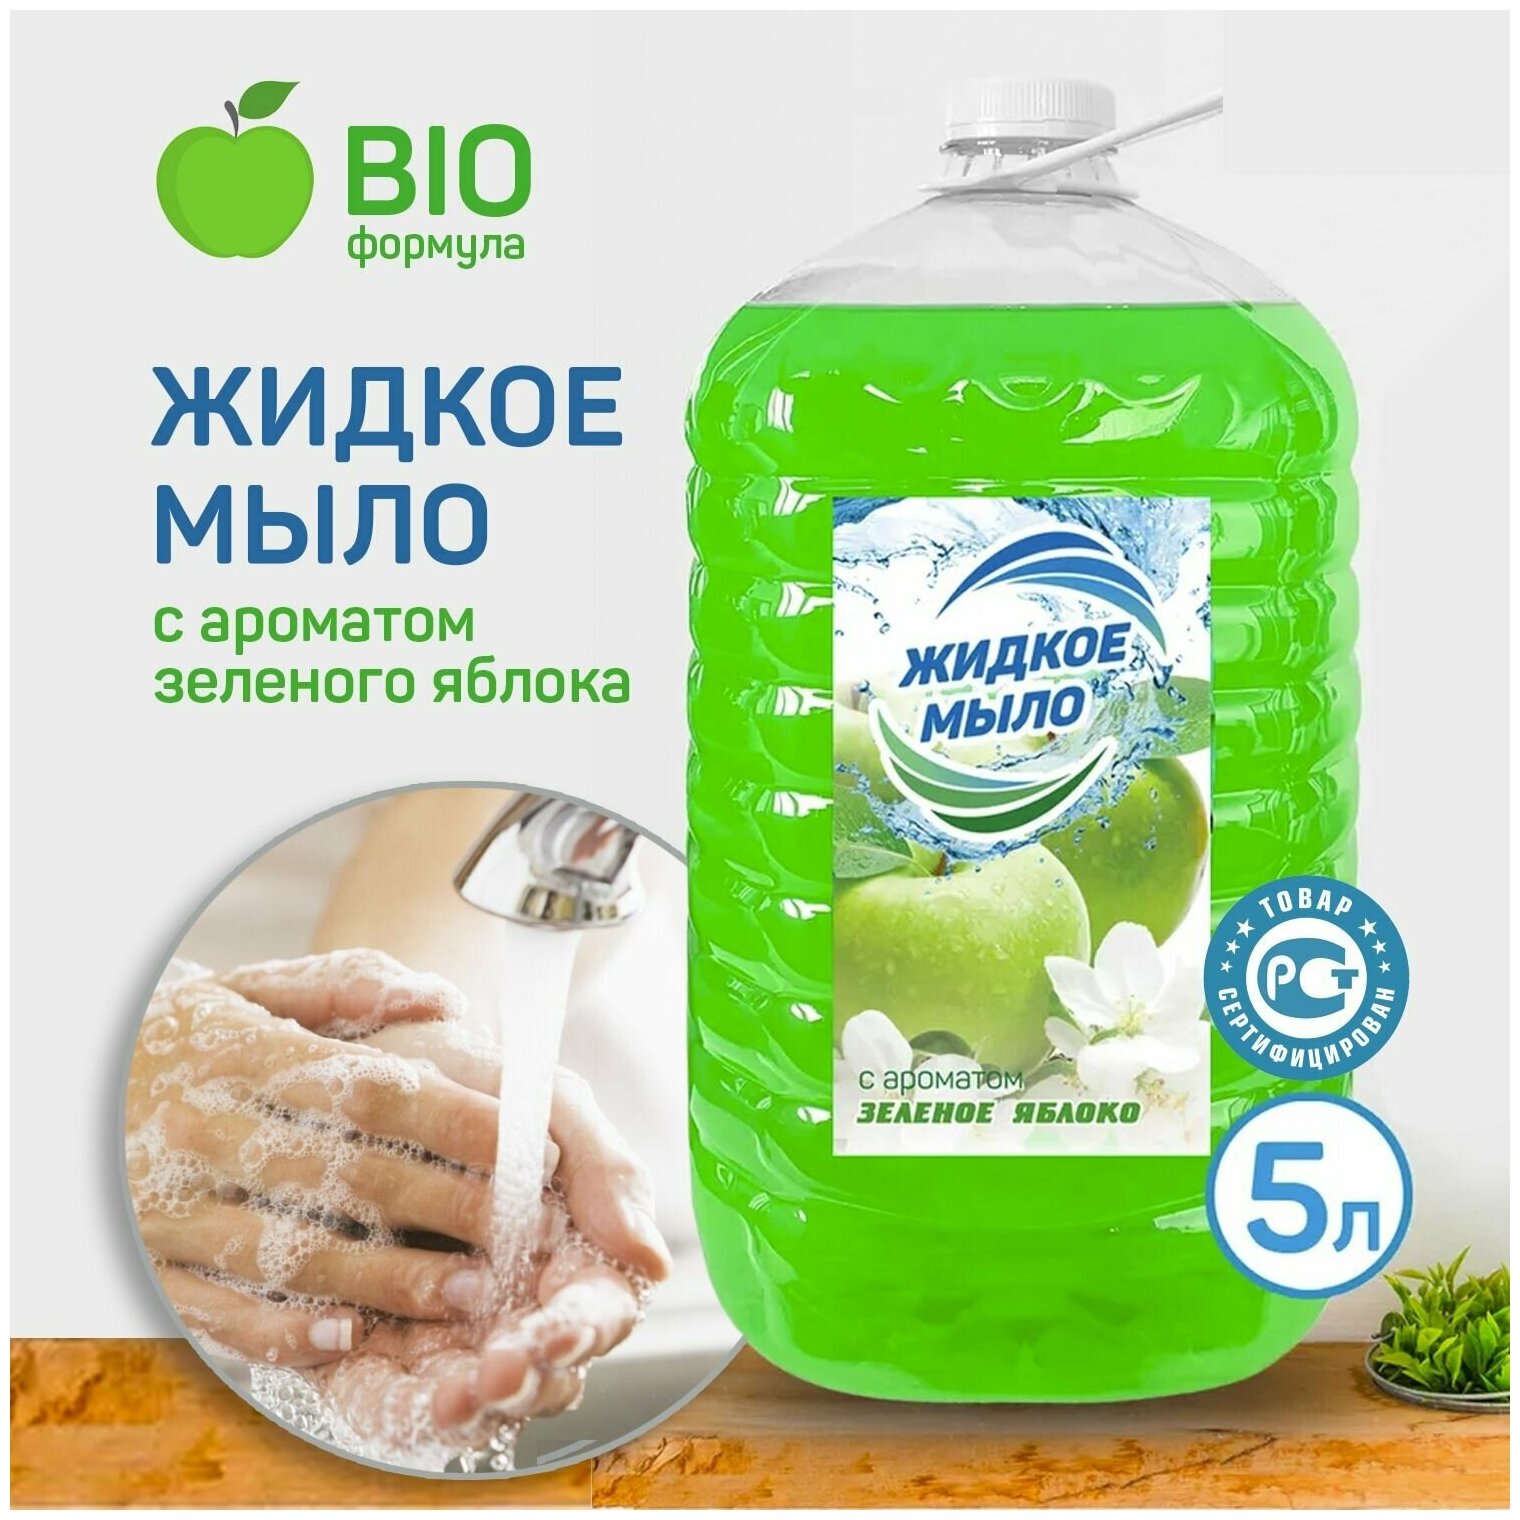 Жидкое мыло увлажняющее KimiKa для рук и тела, аромат Зеленое яблоко, 5 литров